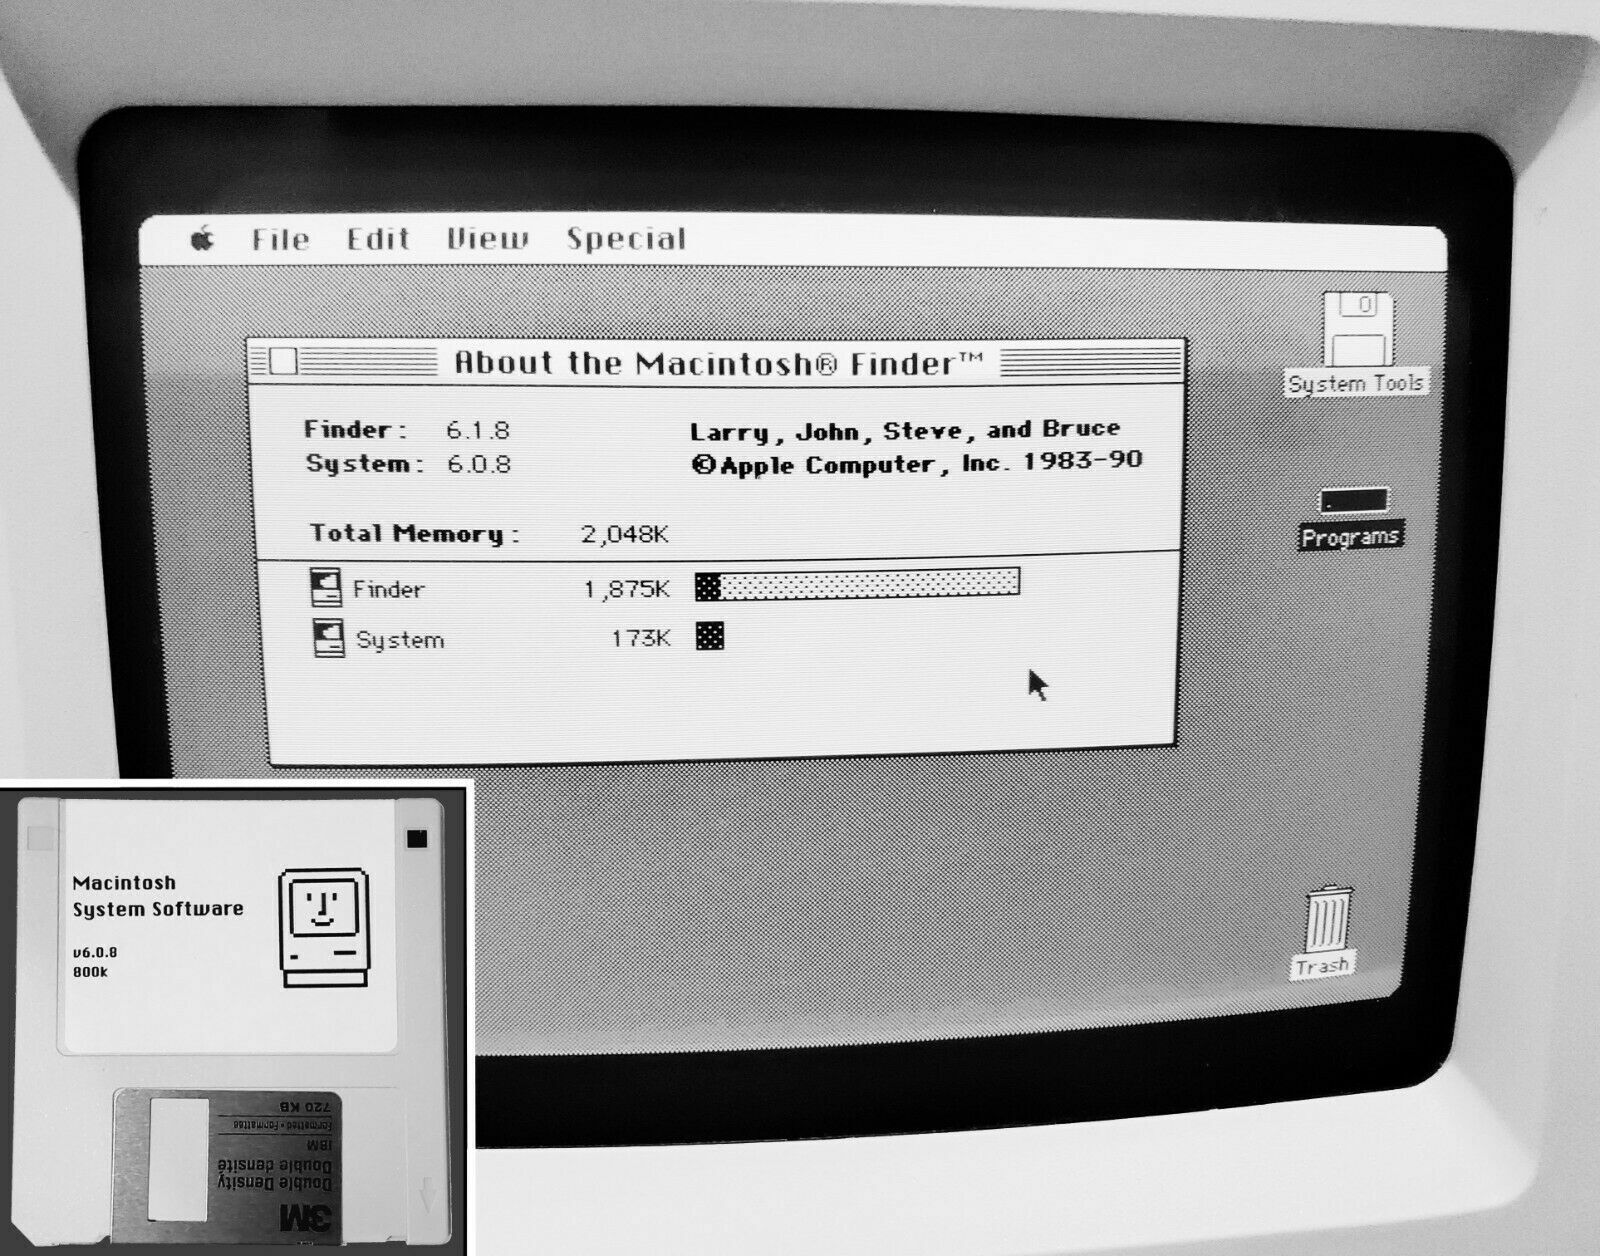 Apple Macintosh Boot Disk System [1.1 - 6.0.8] 400/800k Floppy for Vintage Macs